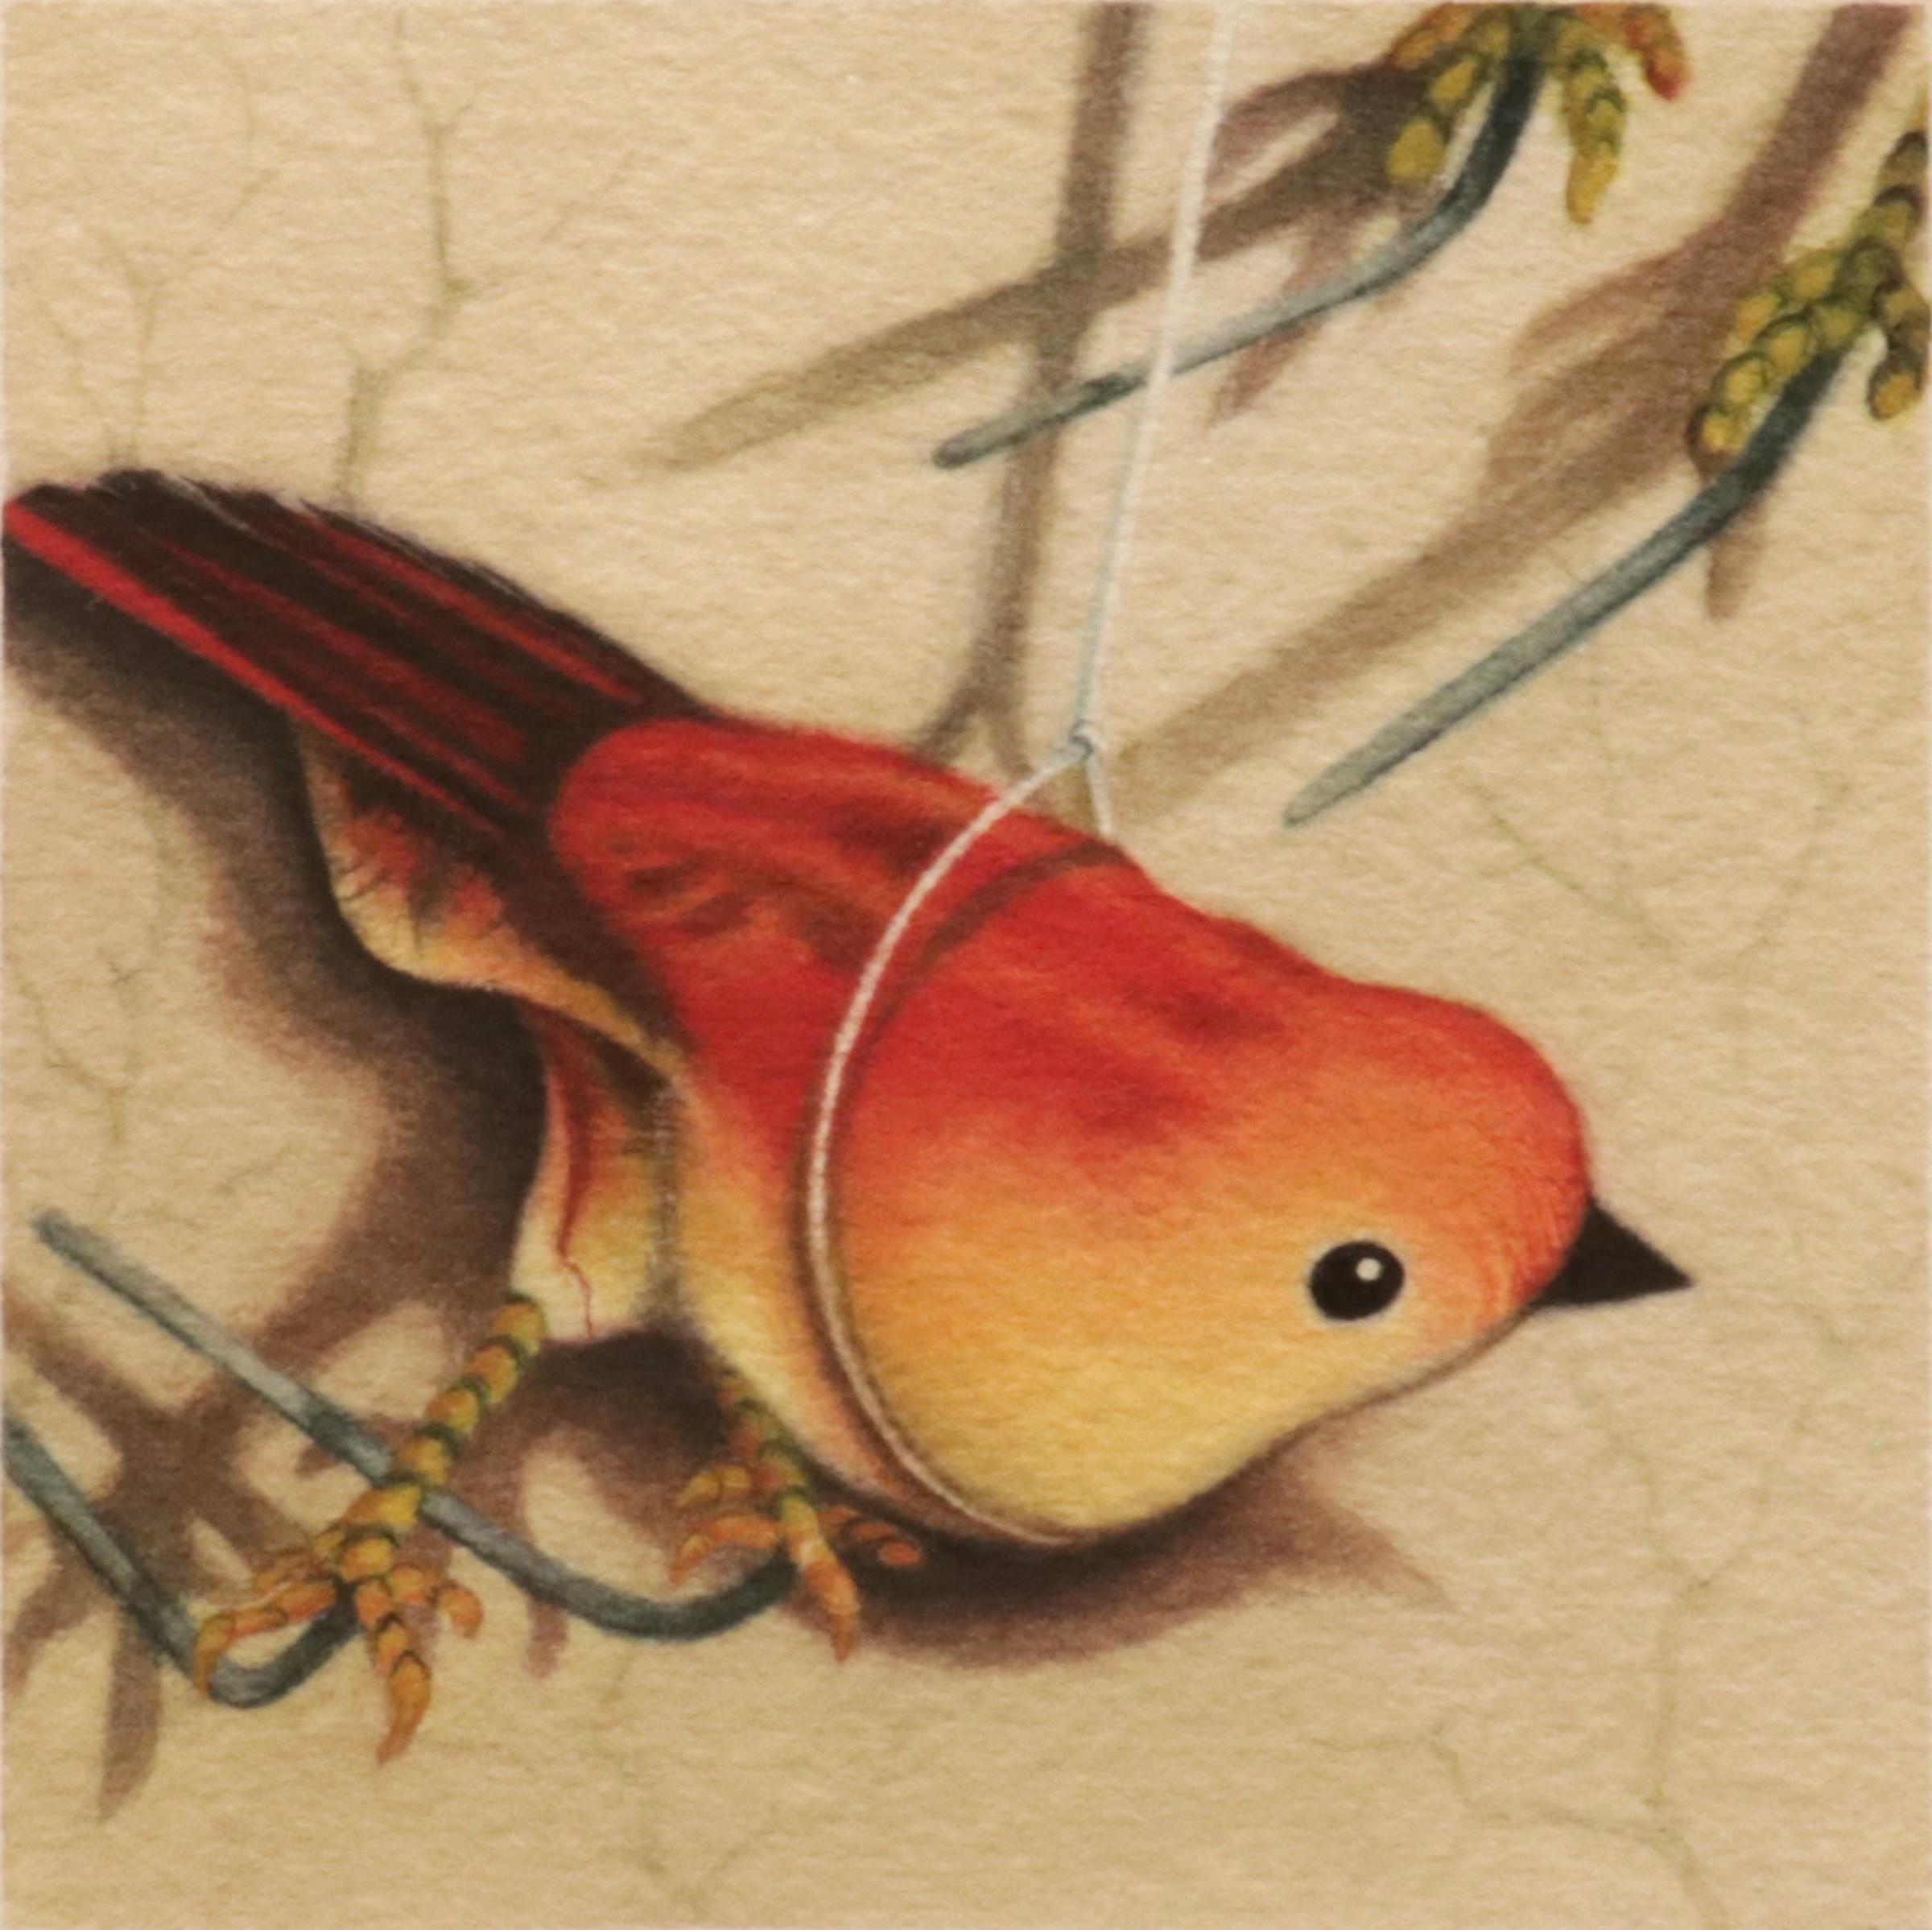 LONE BIRD #4 - Contemporary Realism / Watercolor / Orange Toy Bird